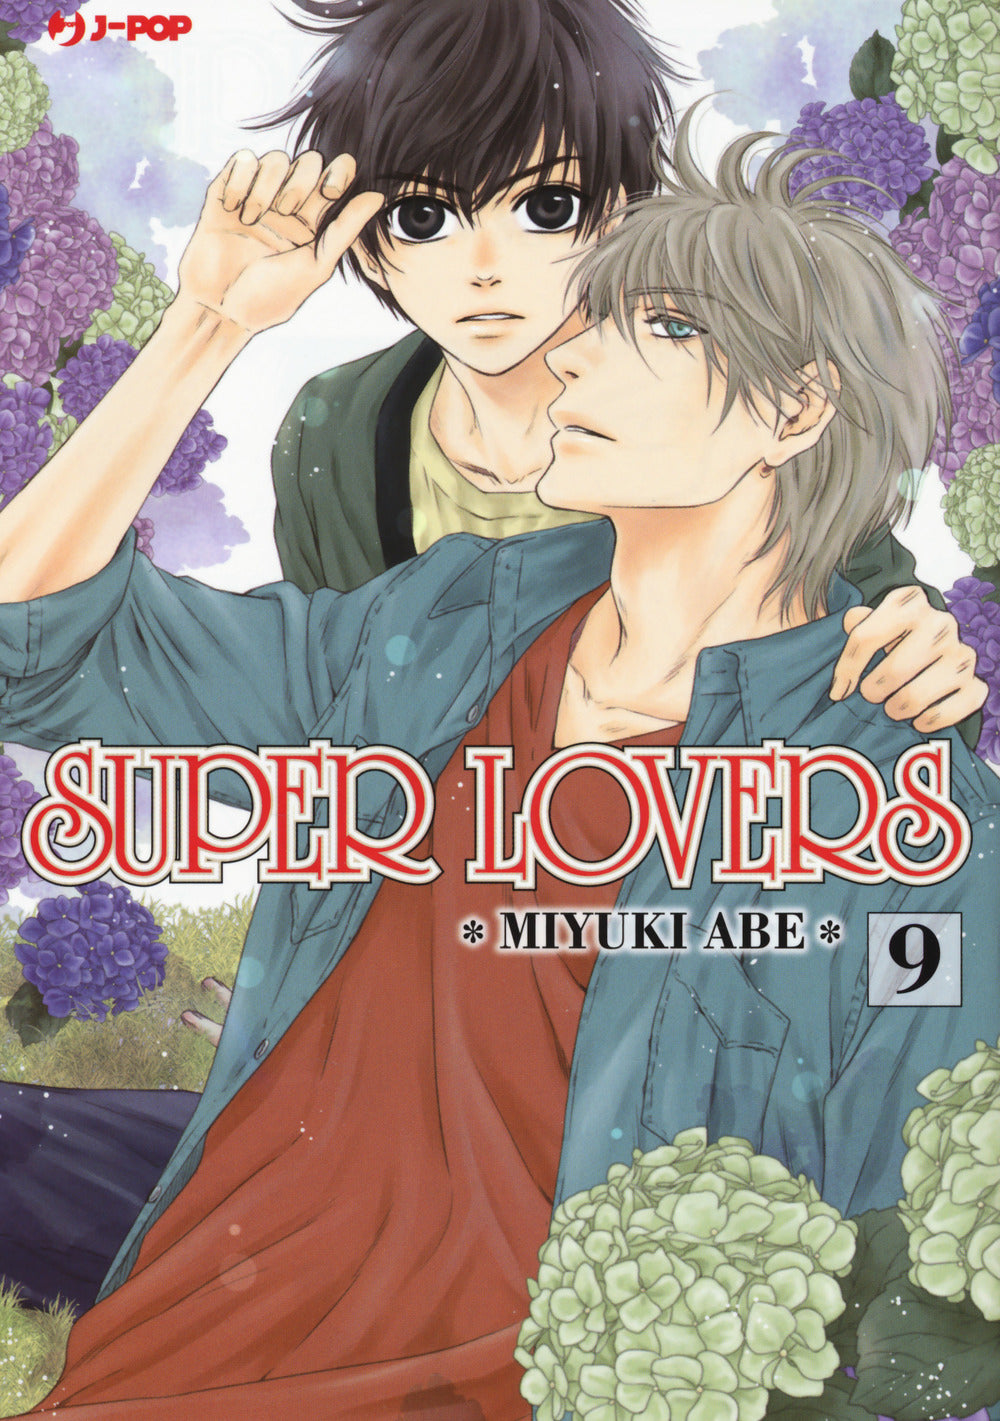 Super lovers. Vol. 9.